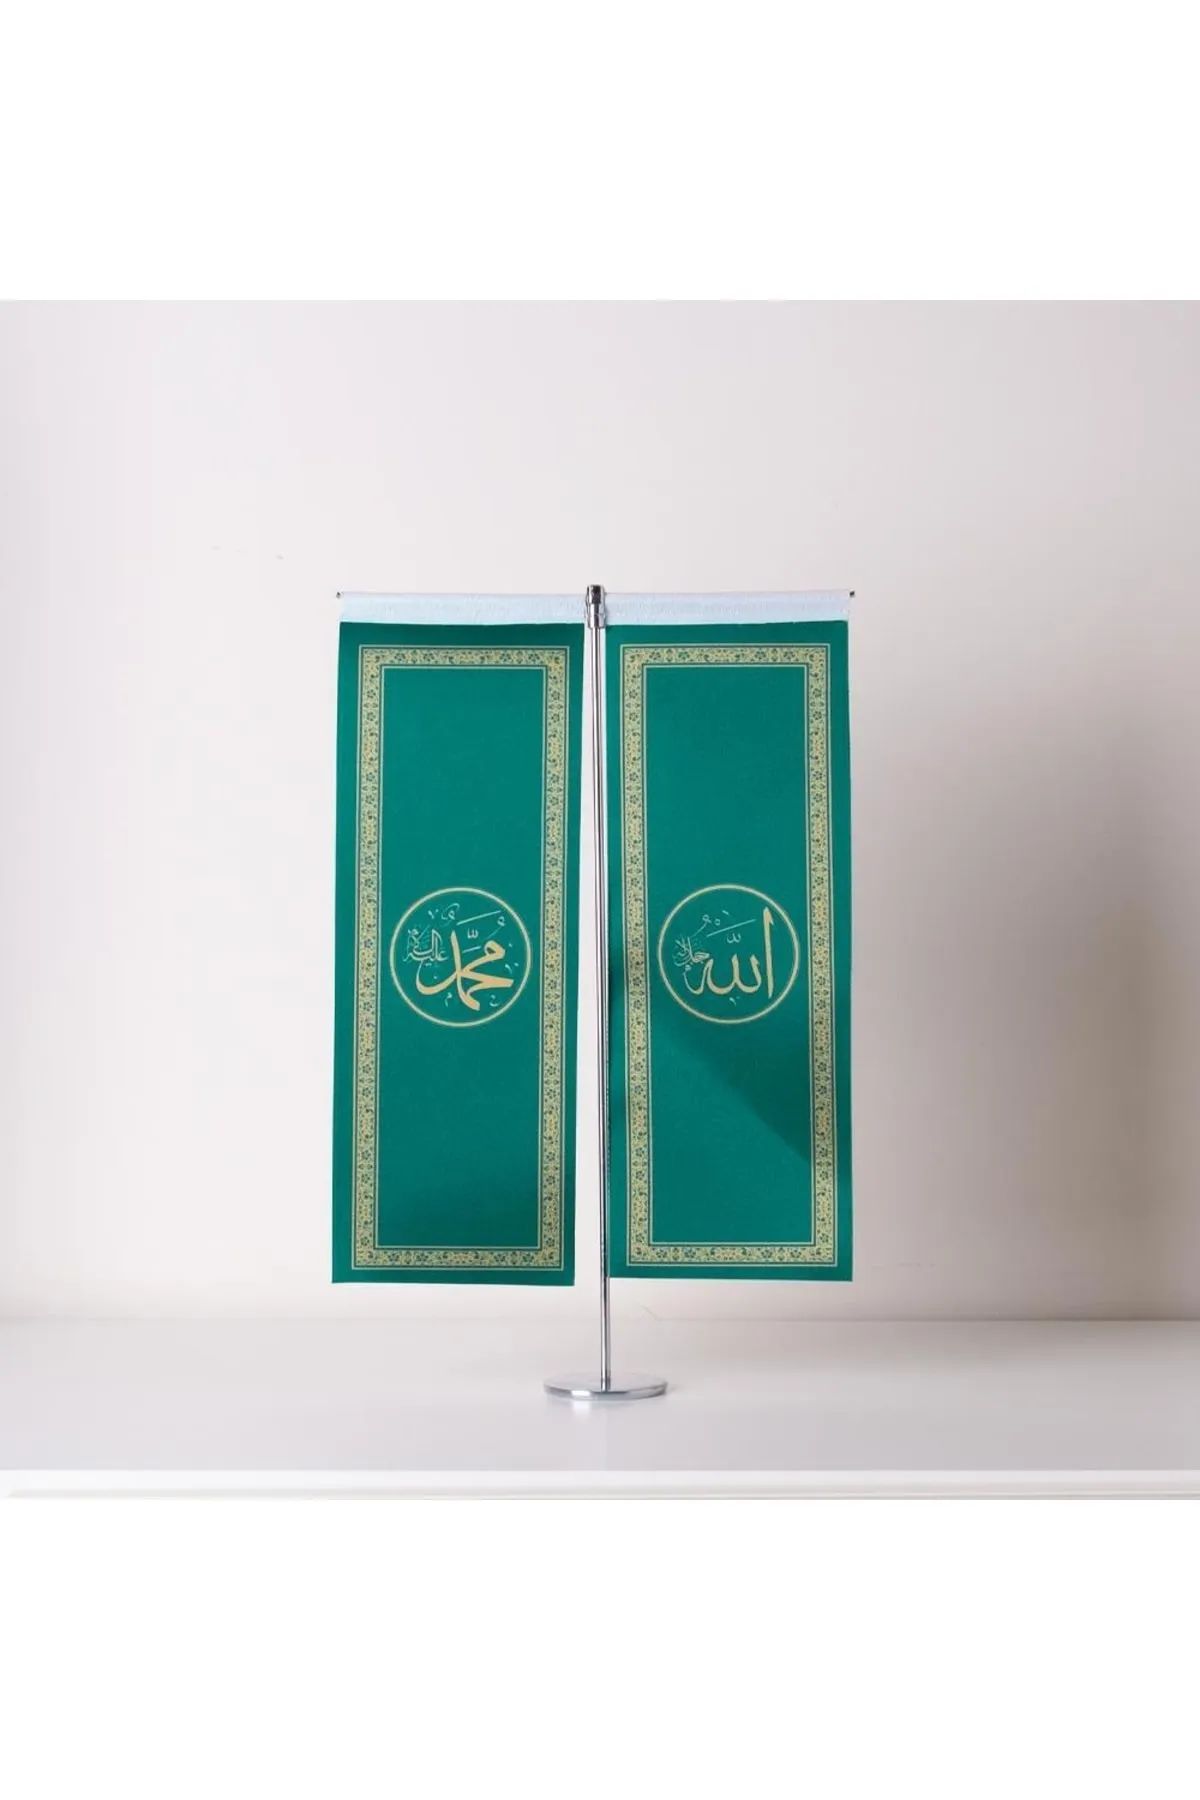 ZC Bayrak Allah-muhammed Ince Uzun Yeşil 2li Masa Bayrağı Saten Kumaş Dijital Baskı 8,5x25 Cm